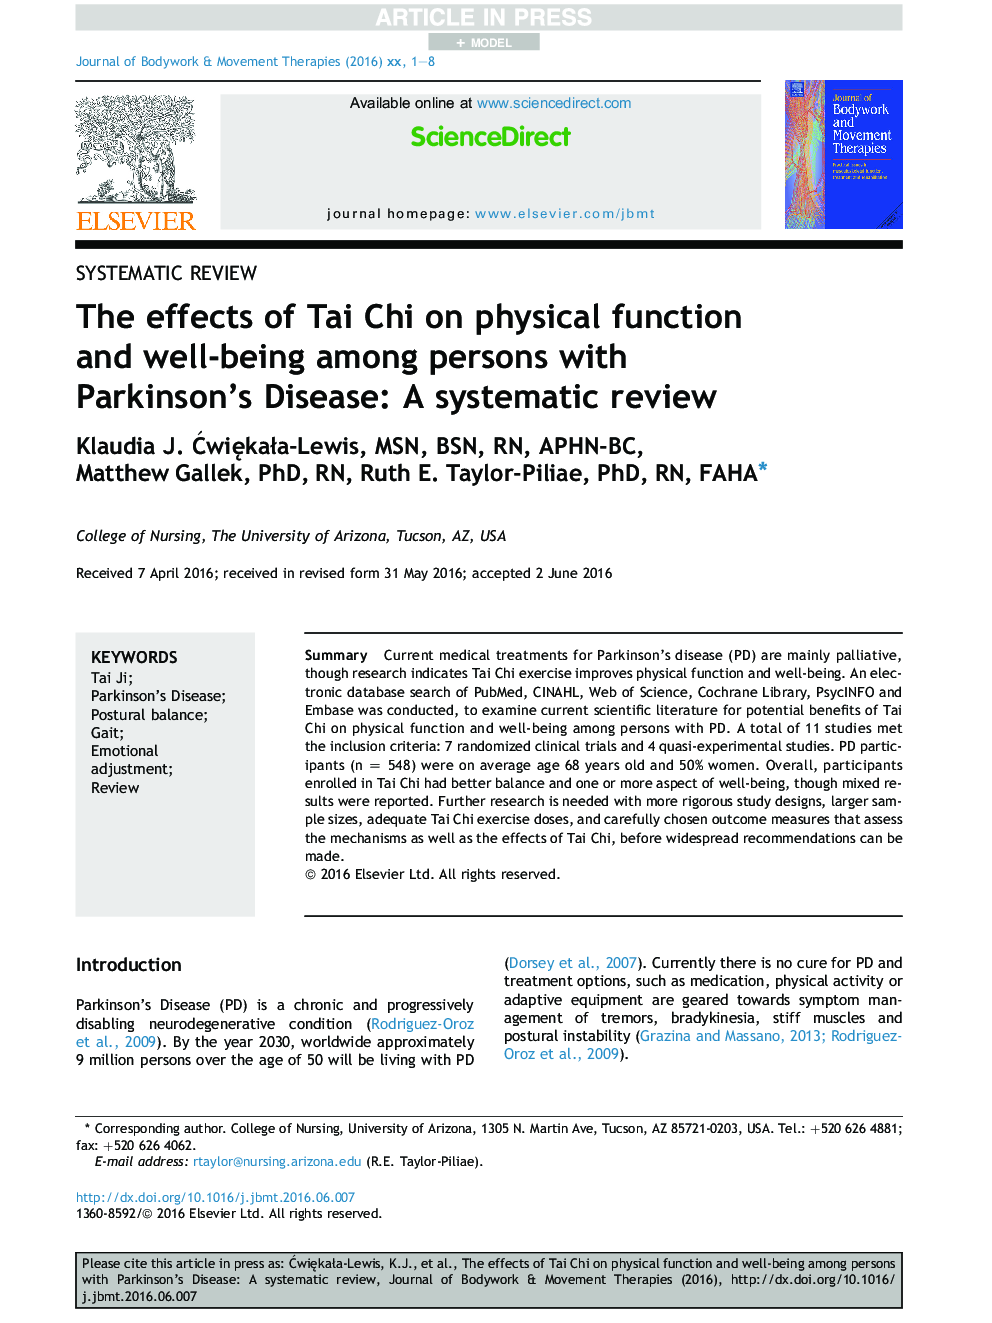 تأثیر تای چی بر عملکرد فیزیکی و رفاه در افراد مبتلا به بیماری پارکینسون: بررسی سیستماتیک 